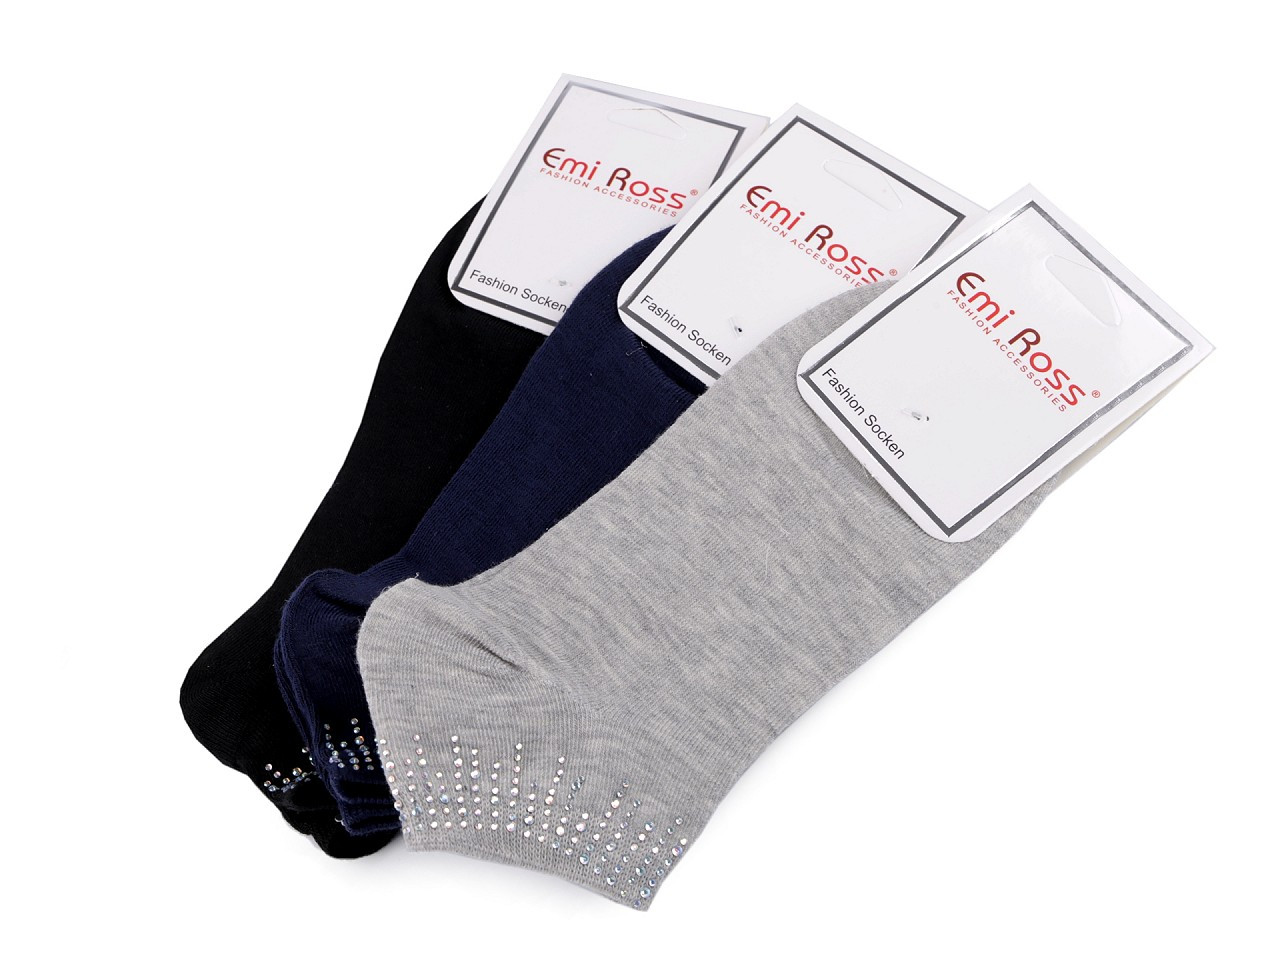 Dámské bavlněné ponožky kotníkové s kamínky Emi Ross, barva 32 (vel. 39-42) mix